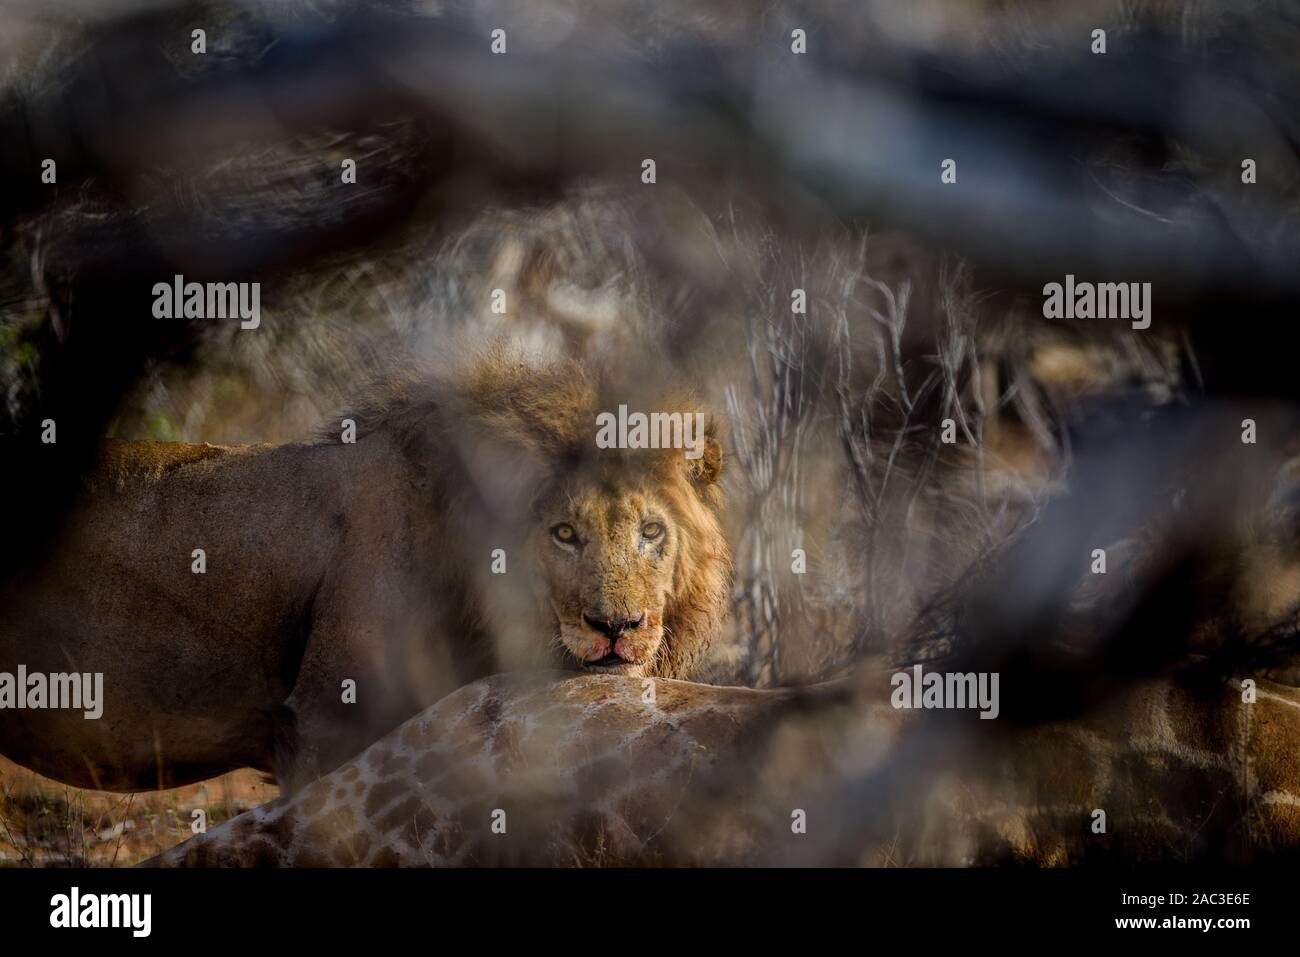 Male lion close up portrait Stock Photo